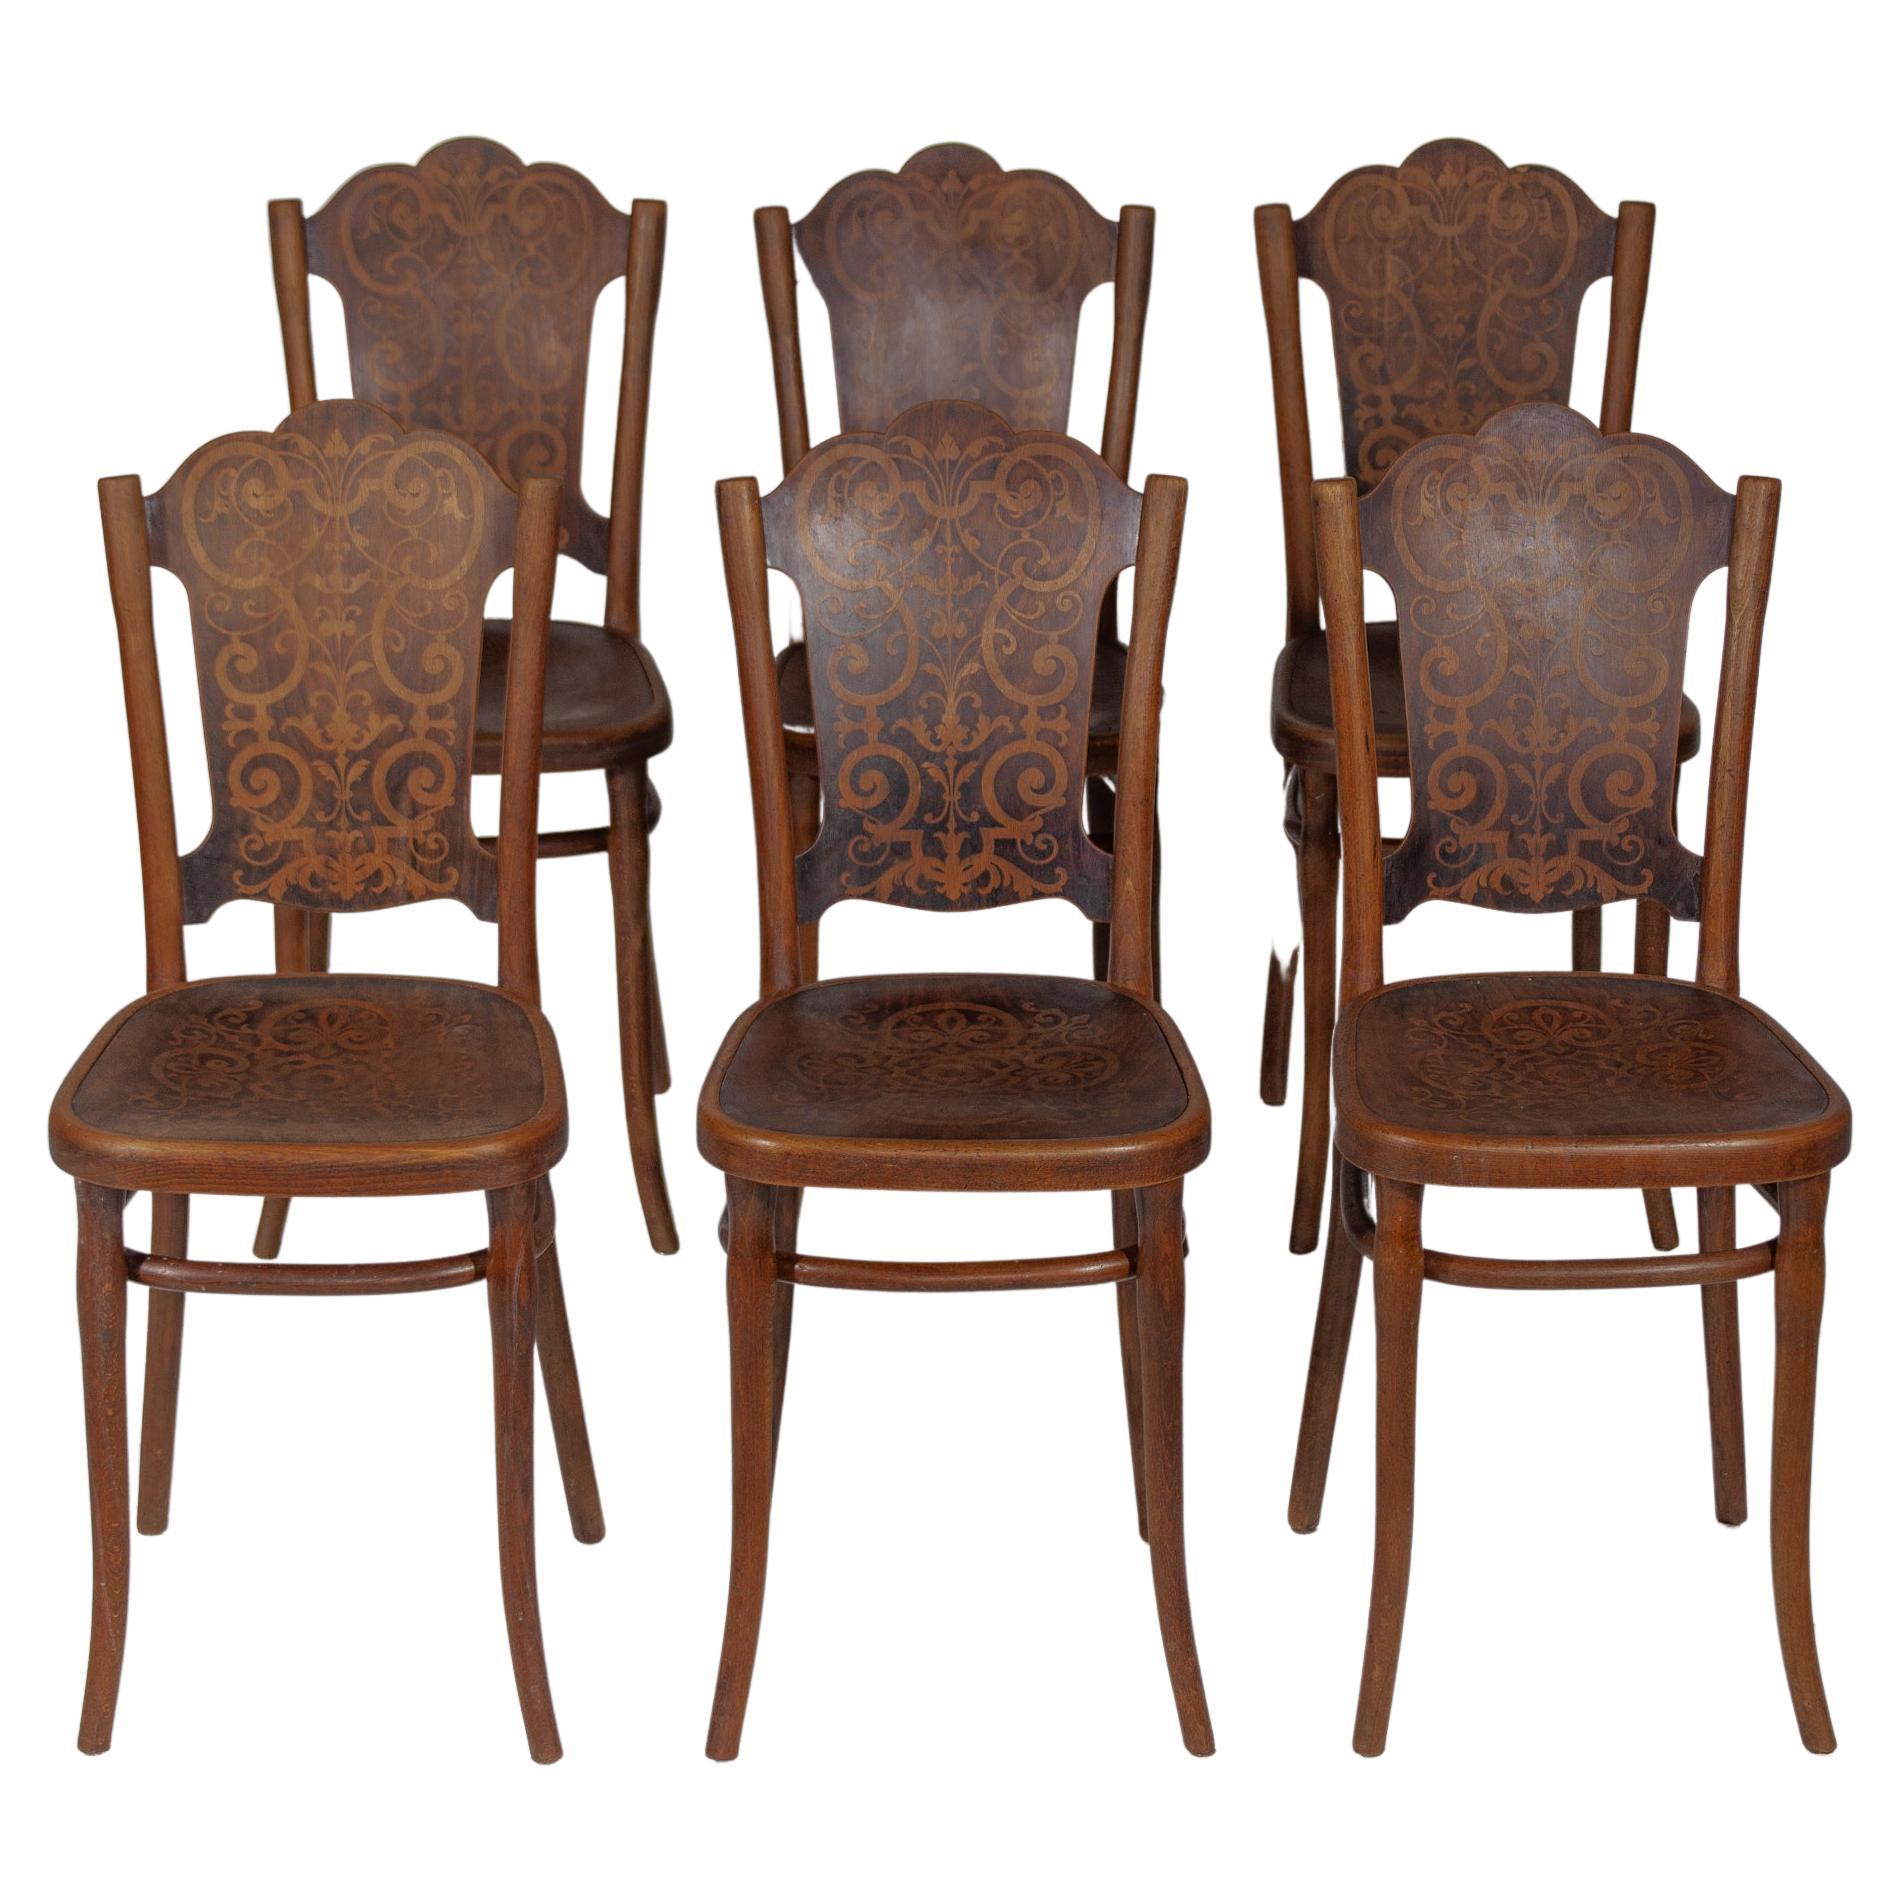 Antiker, sehr schöner Jugendstil-Satz von sechs Thonet-Stühlen mit einem gedruckten Muster. Alle Stühle sind mit dem originalen THONET-Papierlogo beschriftet. Thonet Design der einzelnen Stühle mit Patina und Charakter braune Akzente, Café oder